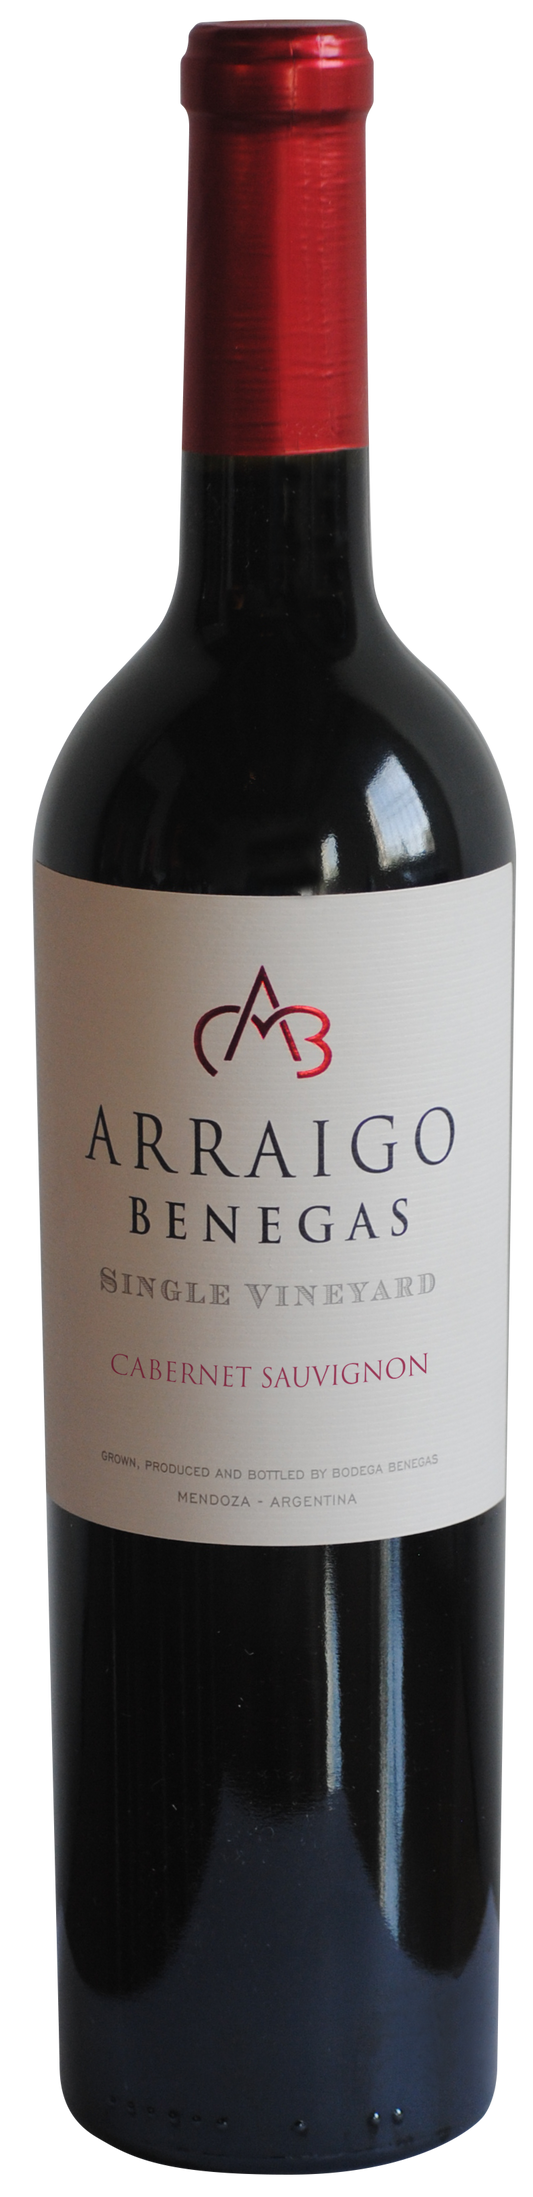 Arraigo Benegas Single Vineyard Cabernet Sauvignon 2018